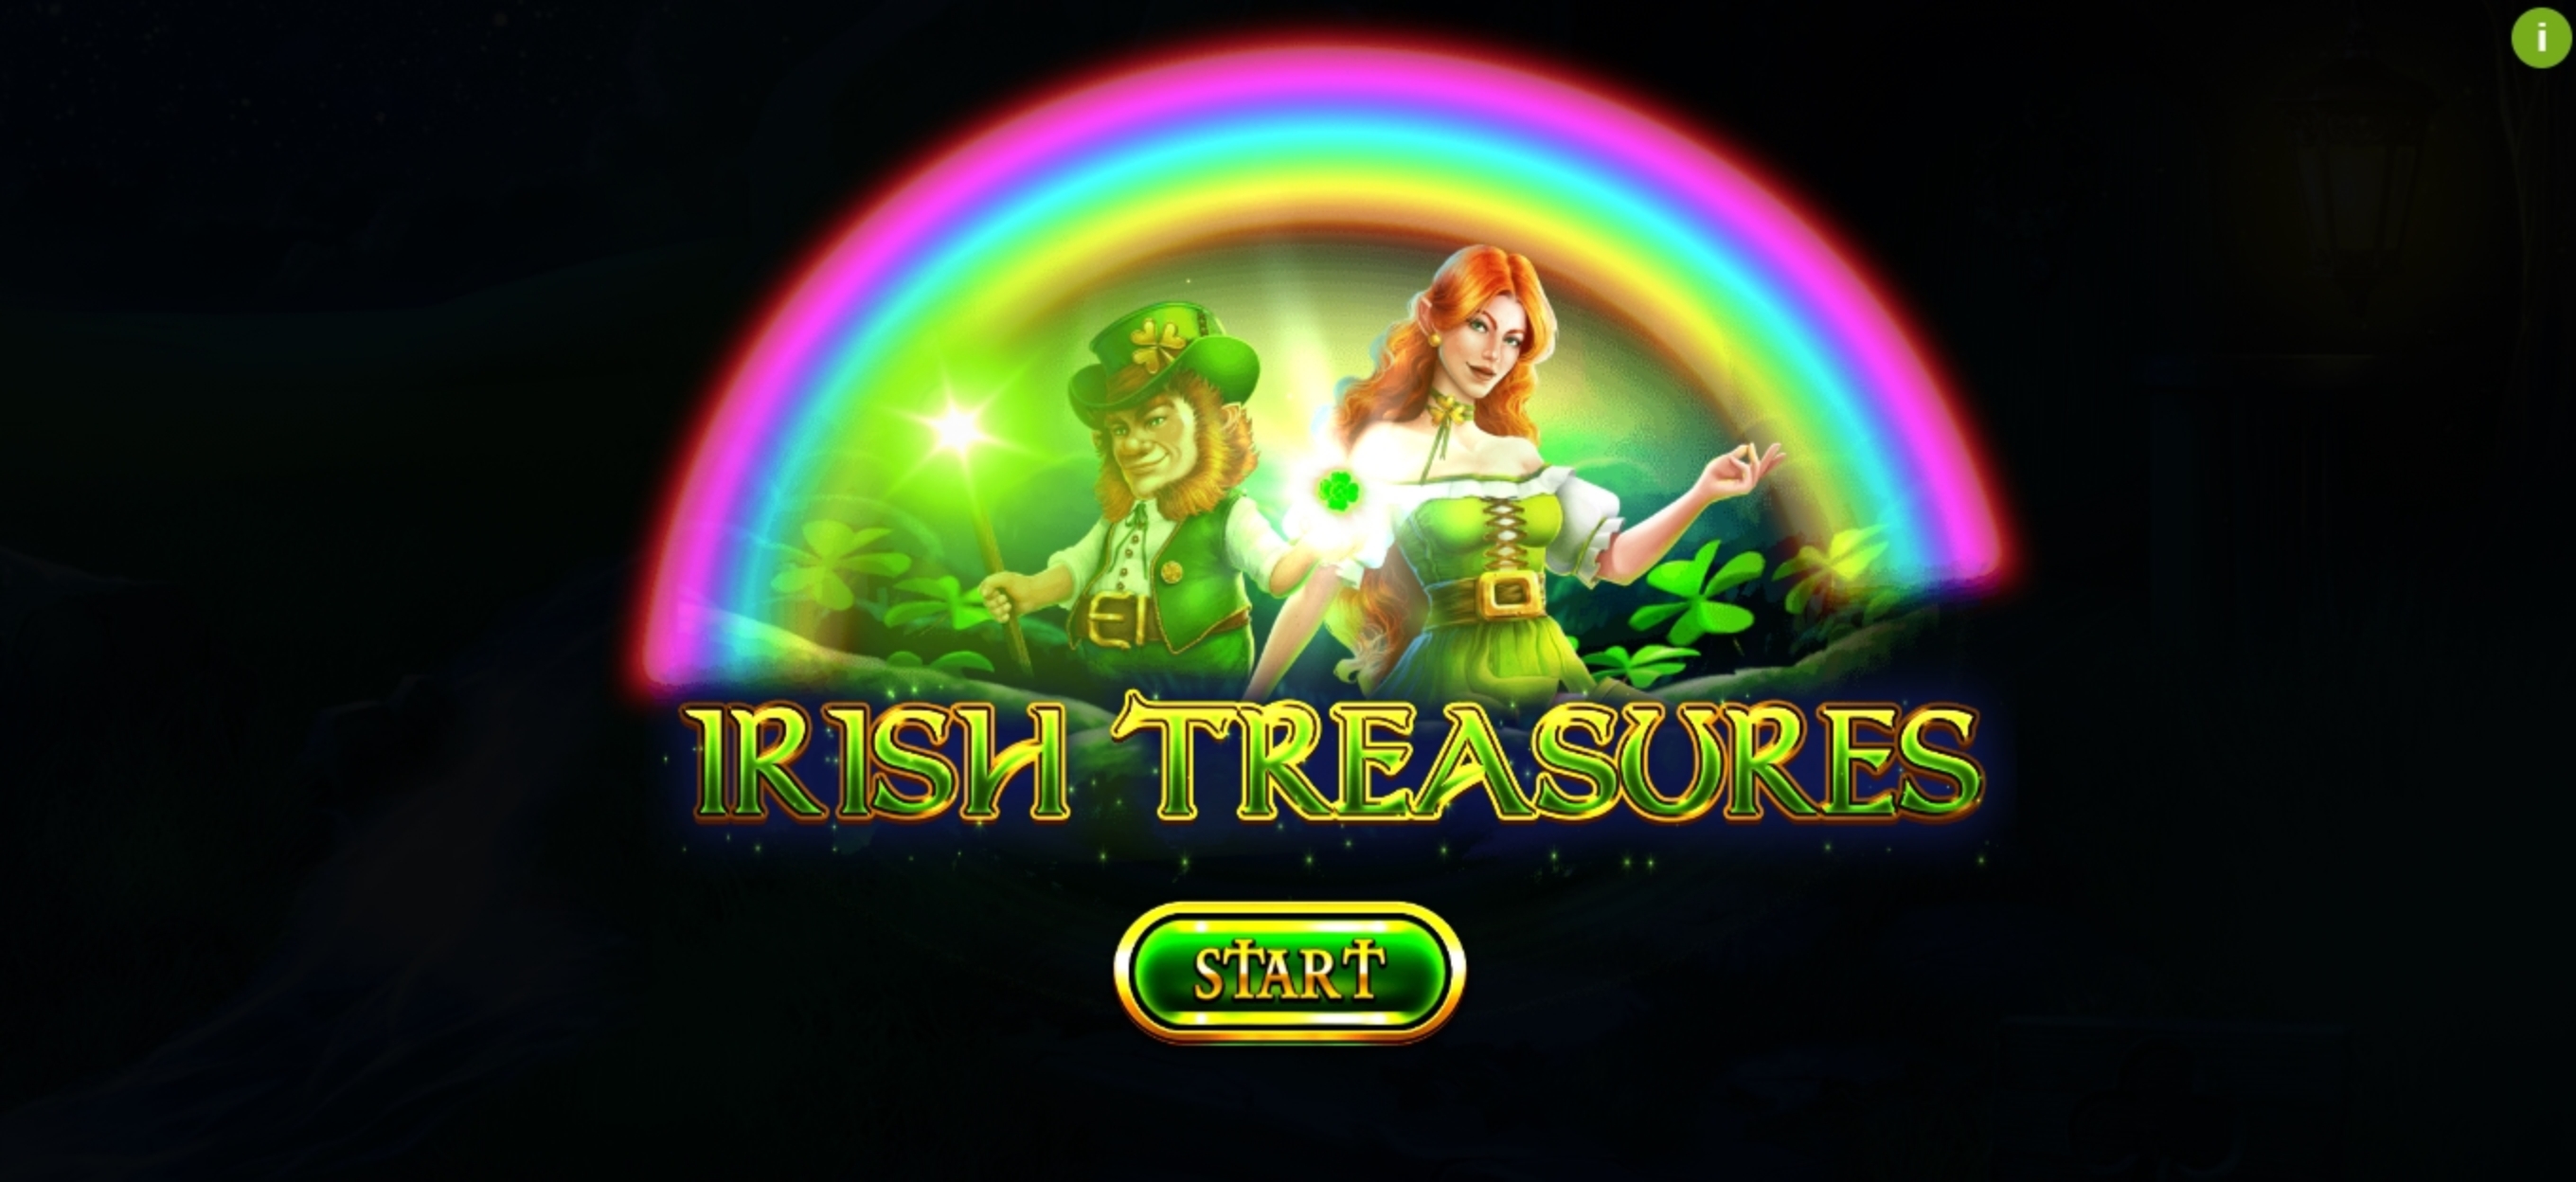 Play Irish Treasures Free Casino Slot Game by Spinomenal